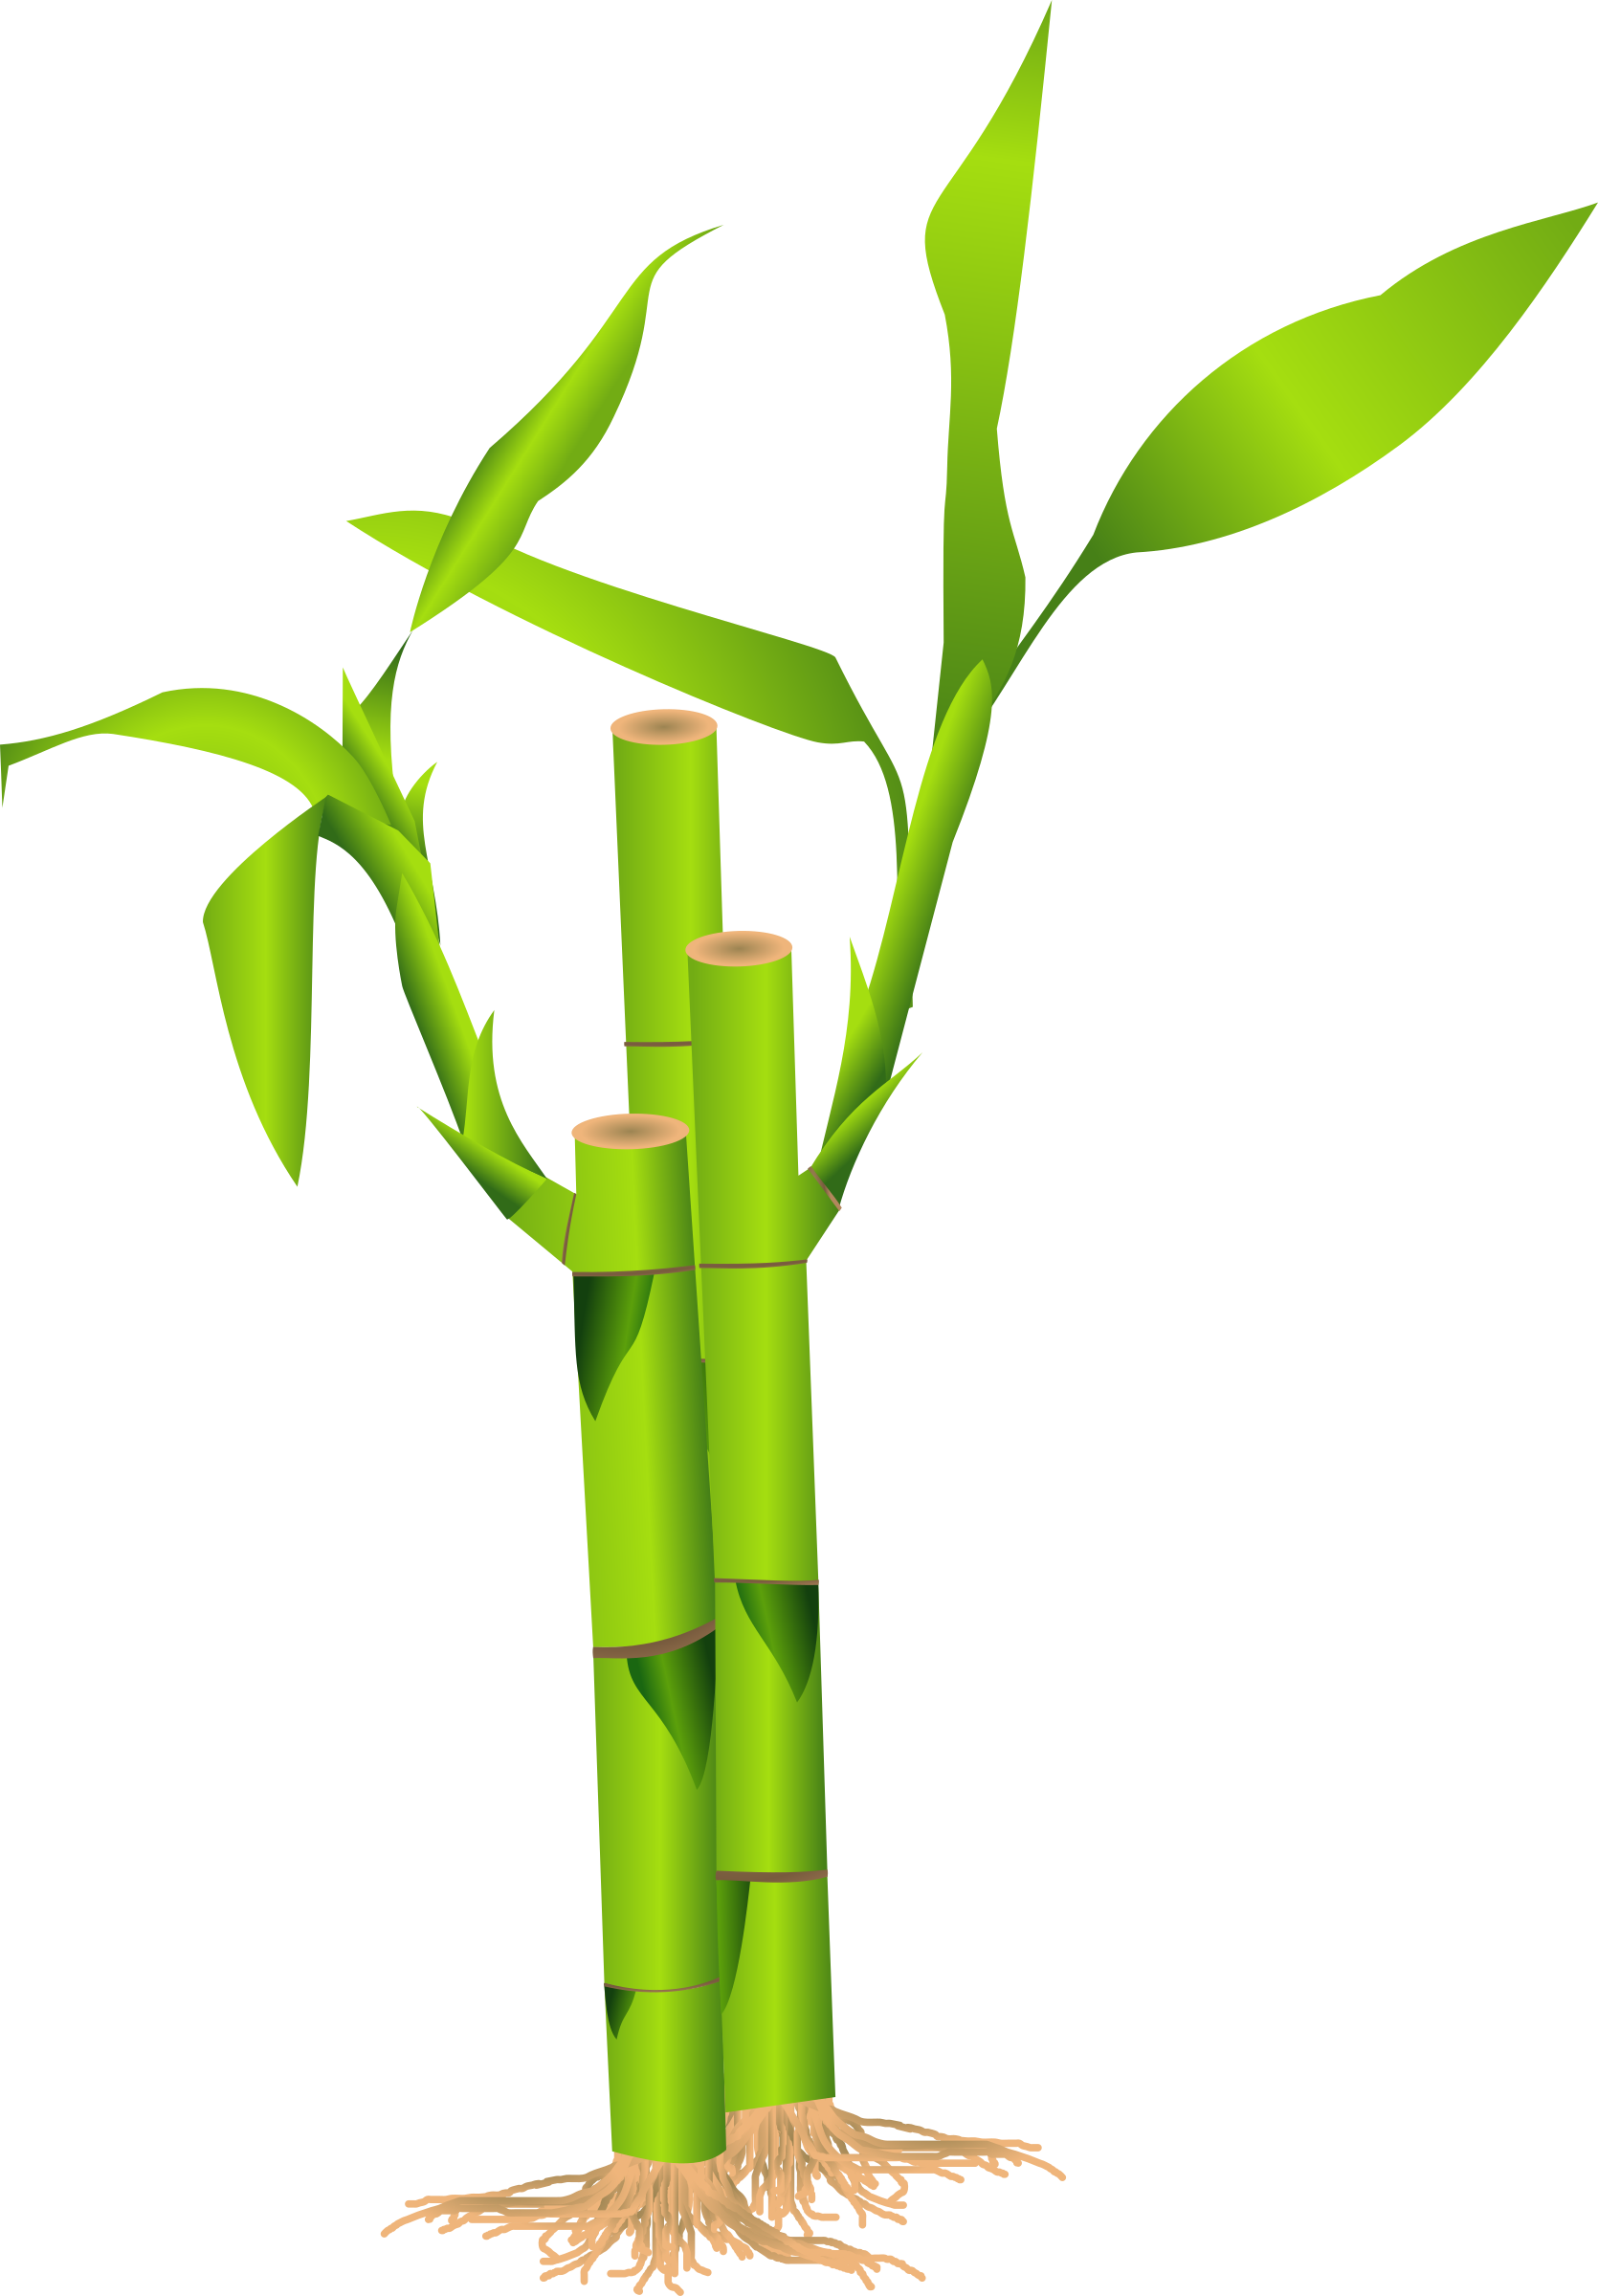 Bambù